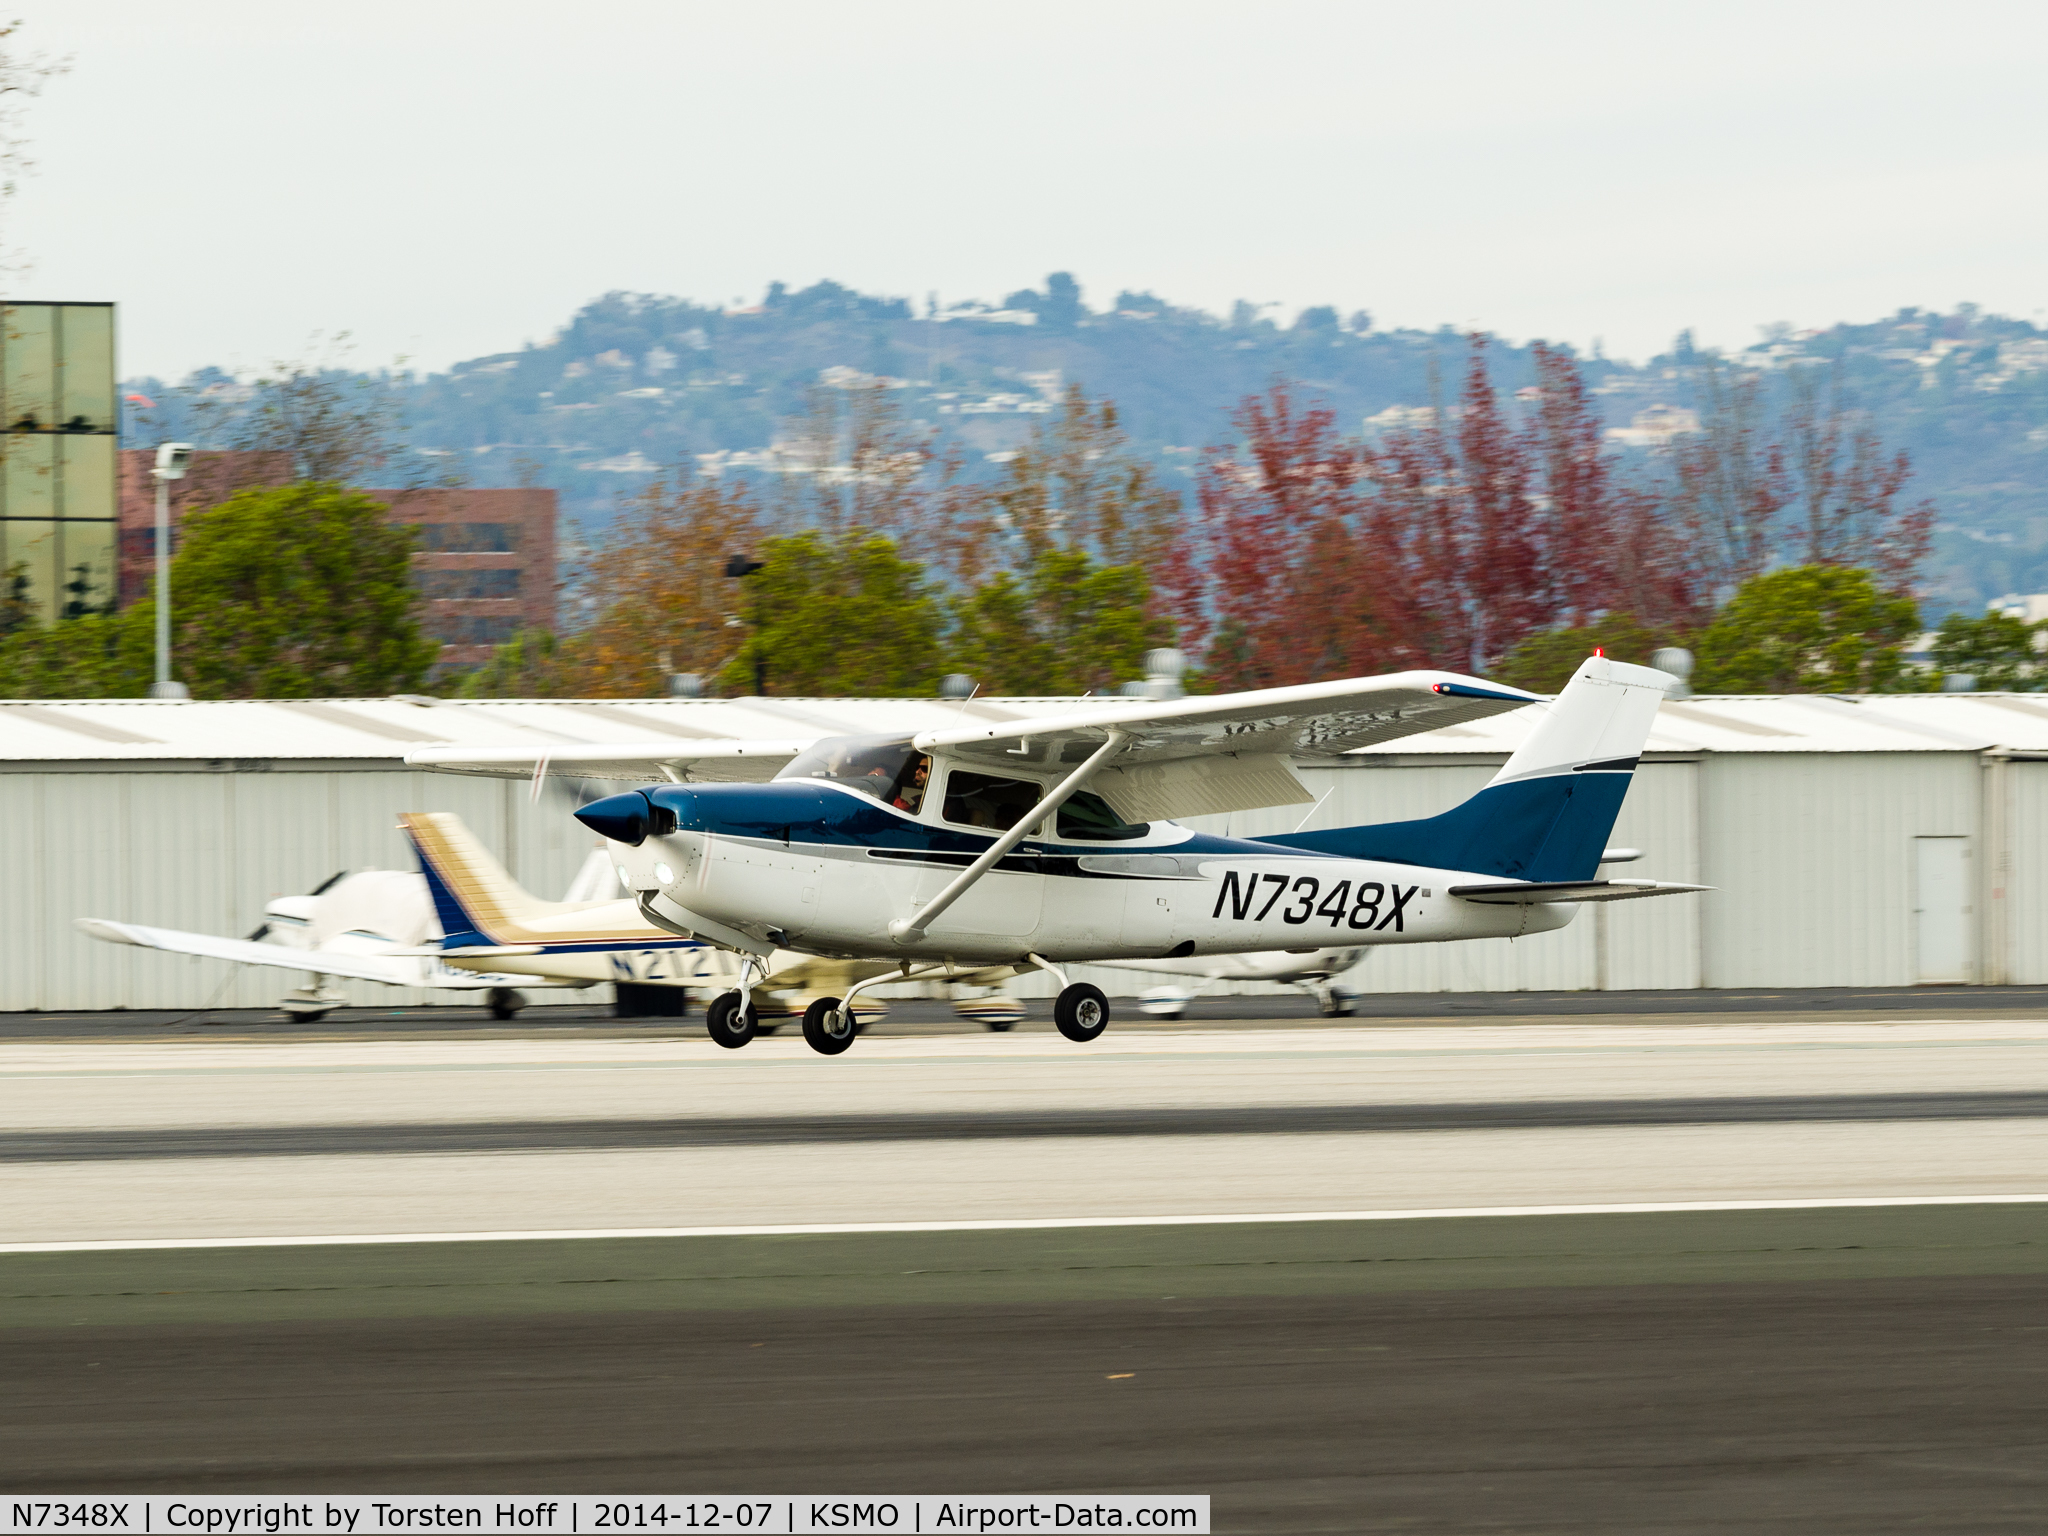 N7348X, 1977 Cessna R182 Skylane RG C/N R18200083, N7348X arriving on RWY 21